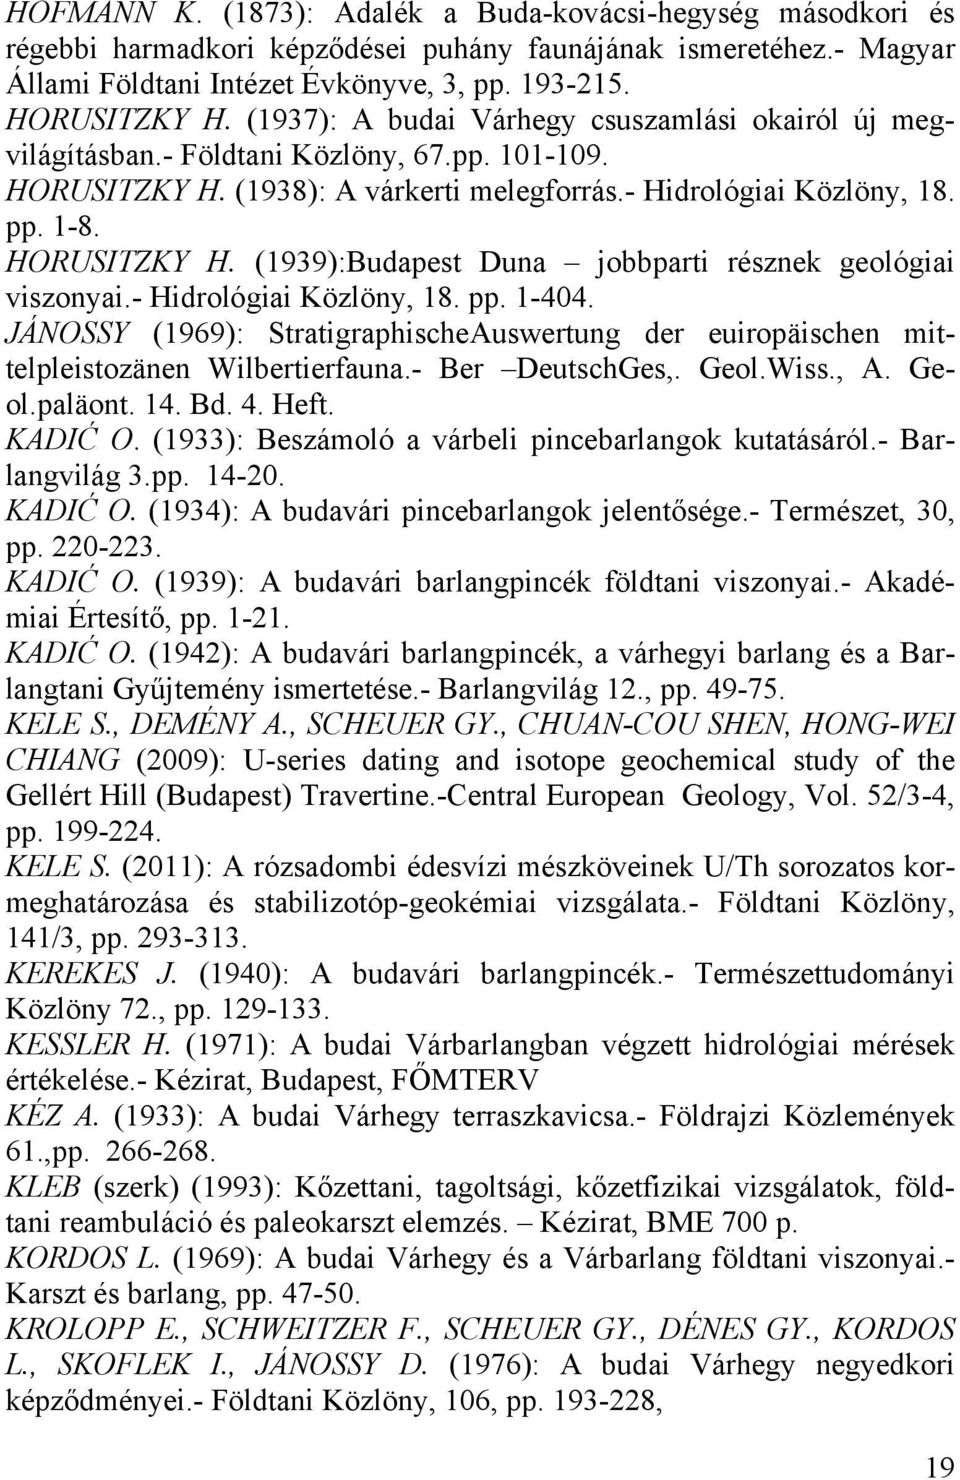 - Hidrológiai Közlöny, 18. pp. 1-404. JÁNOSSY (1969): StratigraphischeAuswertung der euiropäischen mittelpleistozänen Wilbertierfauna.- Ber DeutschGes,. Geol.Wiss., A. Geol.paläont. 14. Bd. 4. Heft.